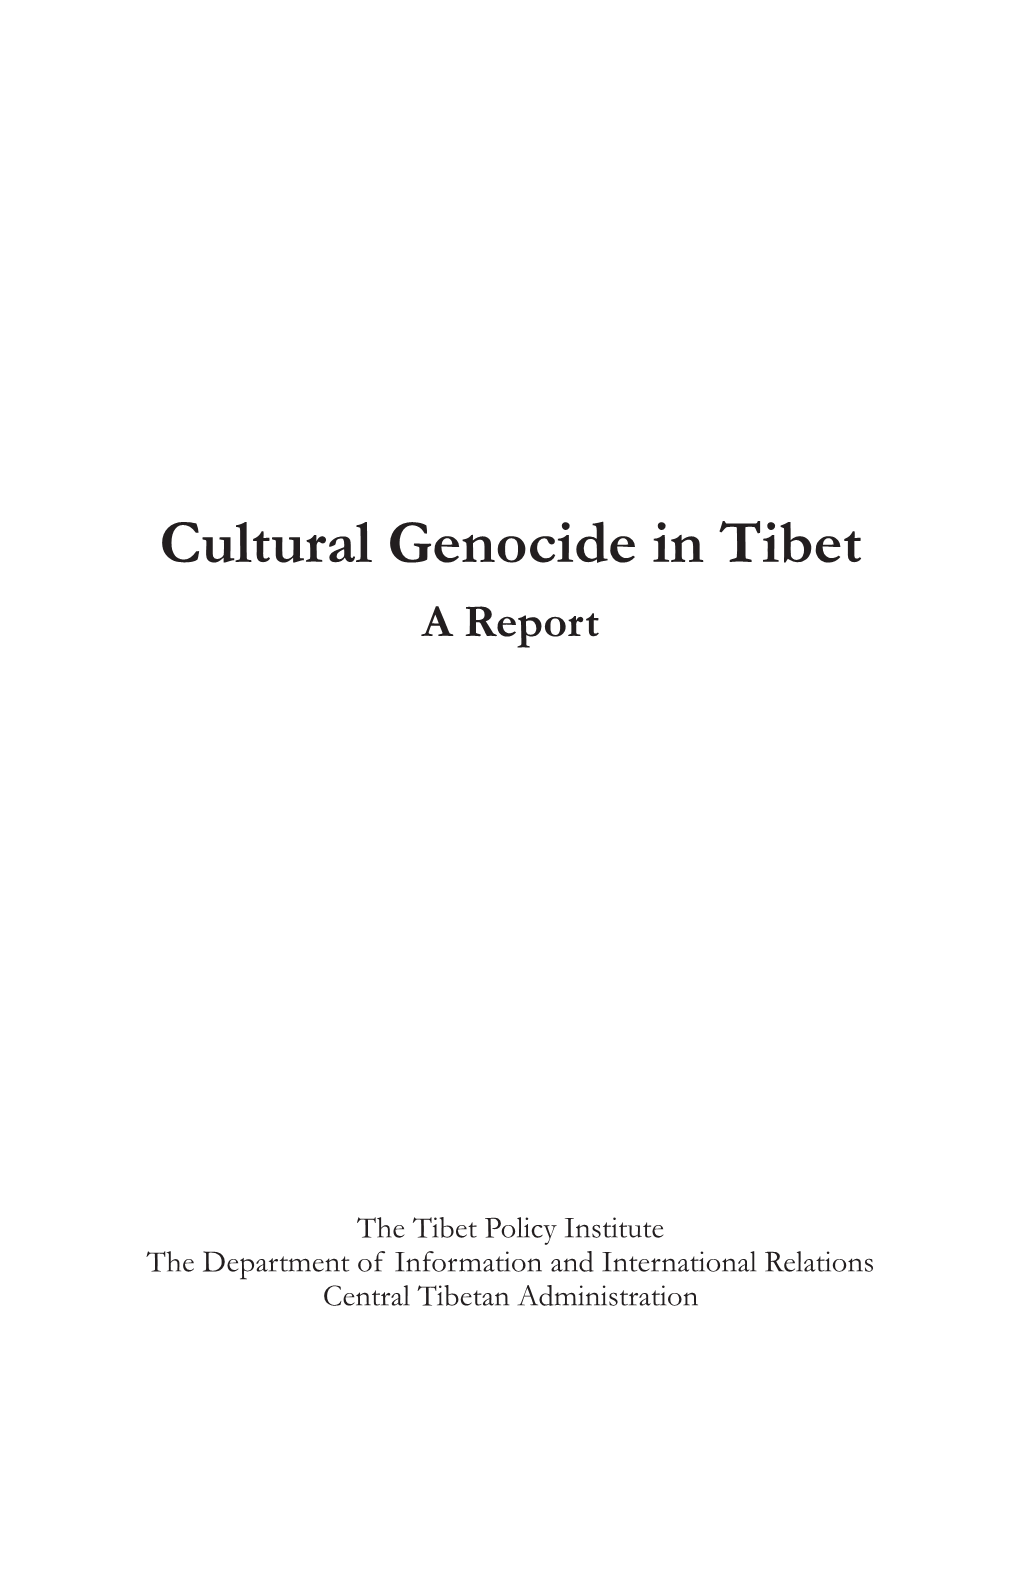 Cultural Genocide in Tibet a Report